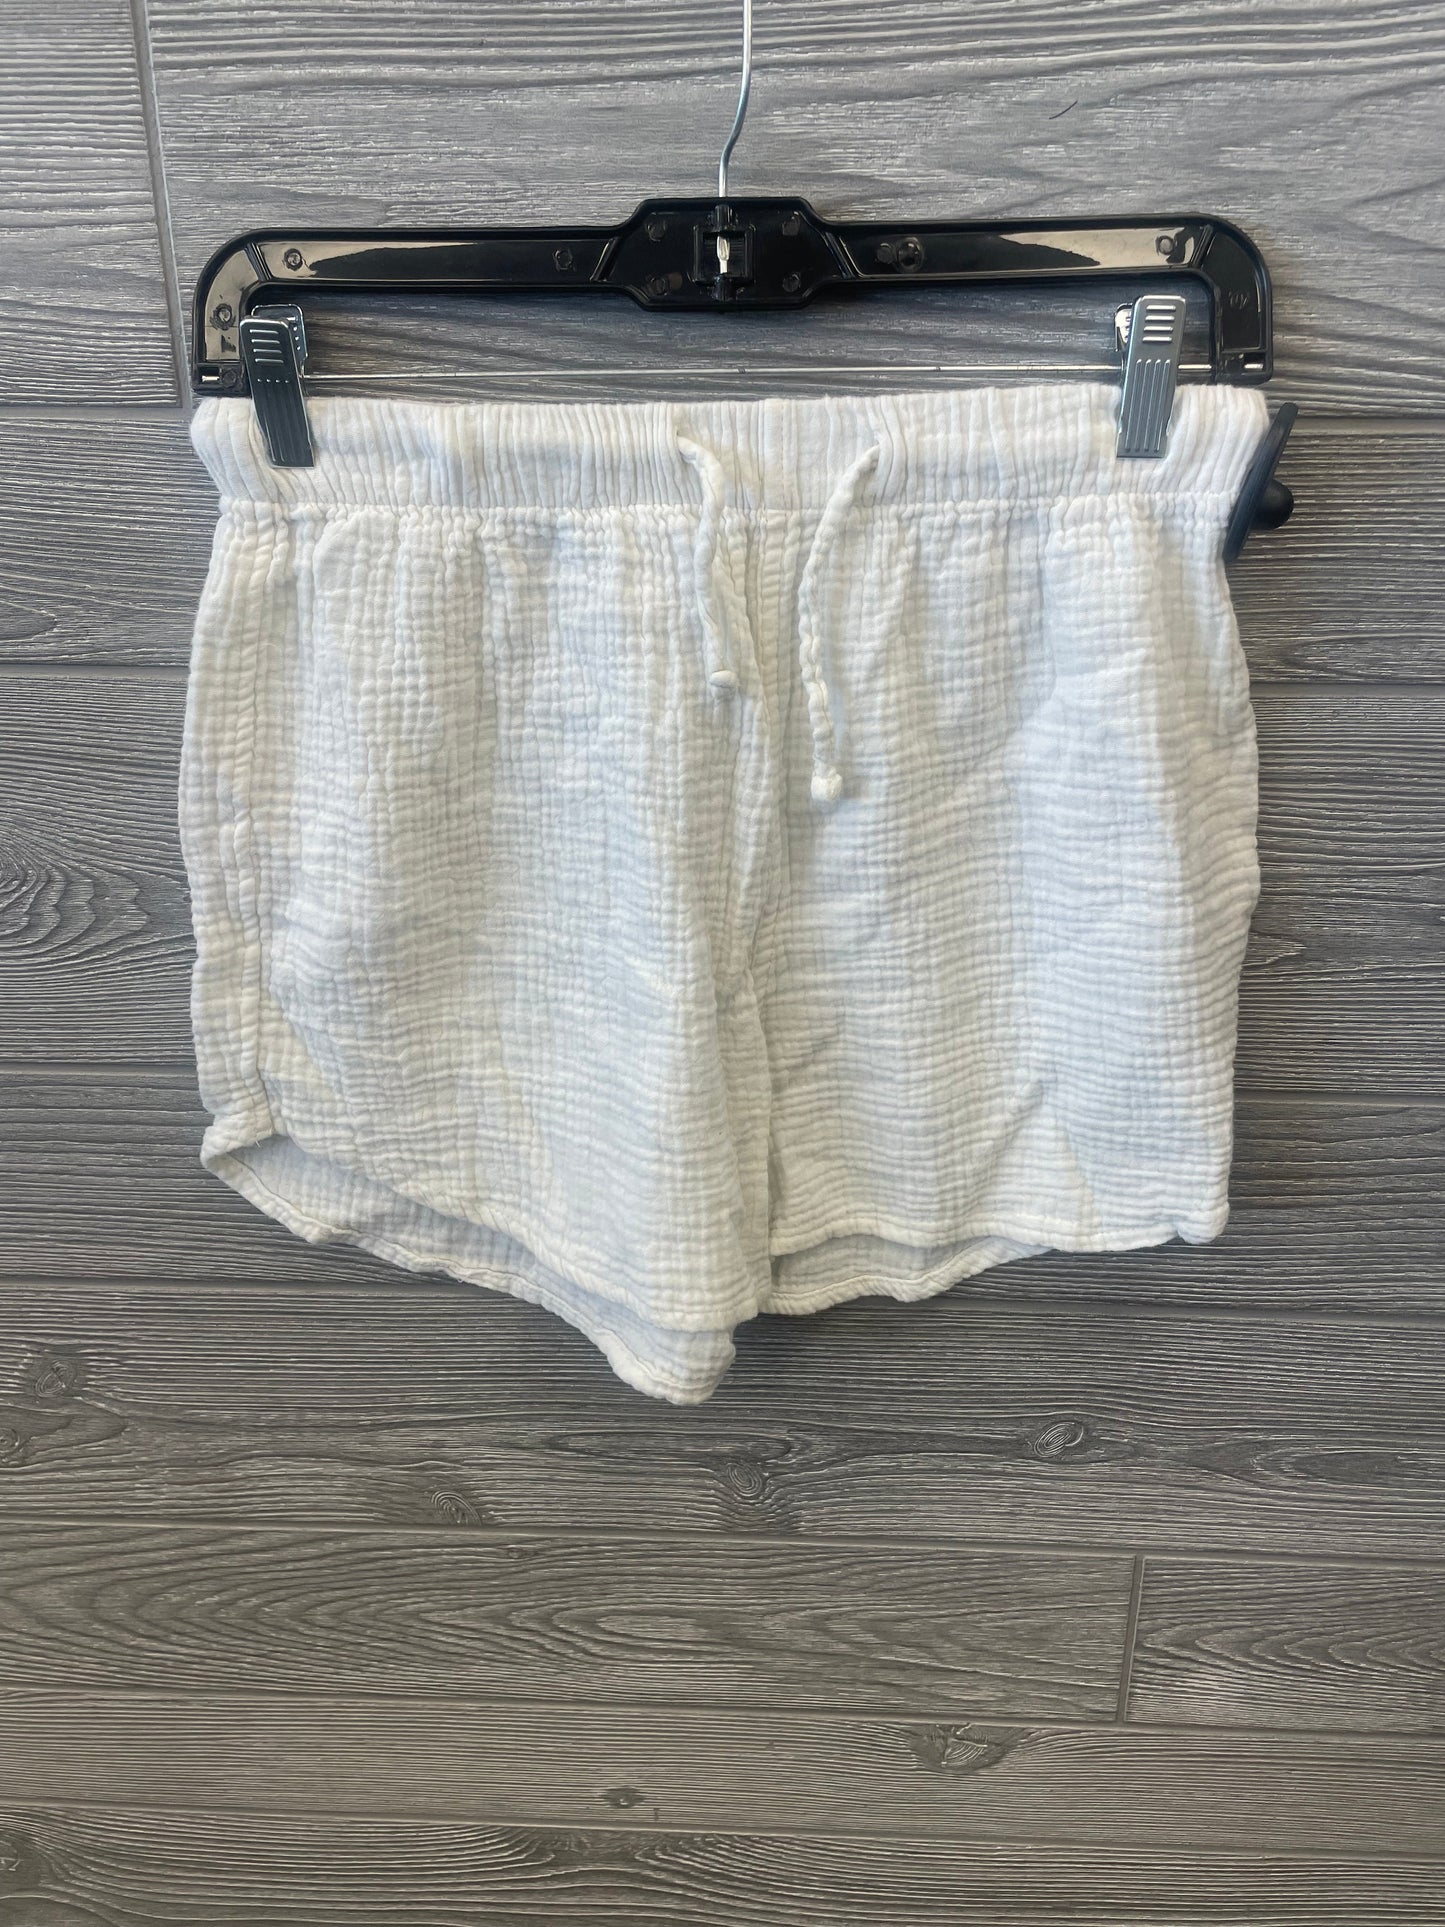 White Shorts Serra, Size 4